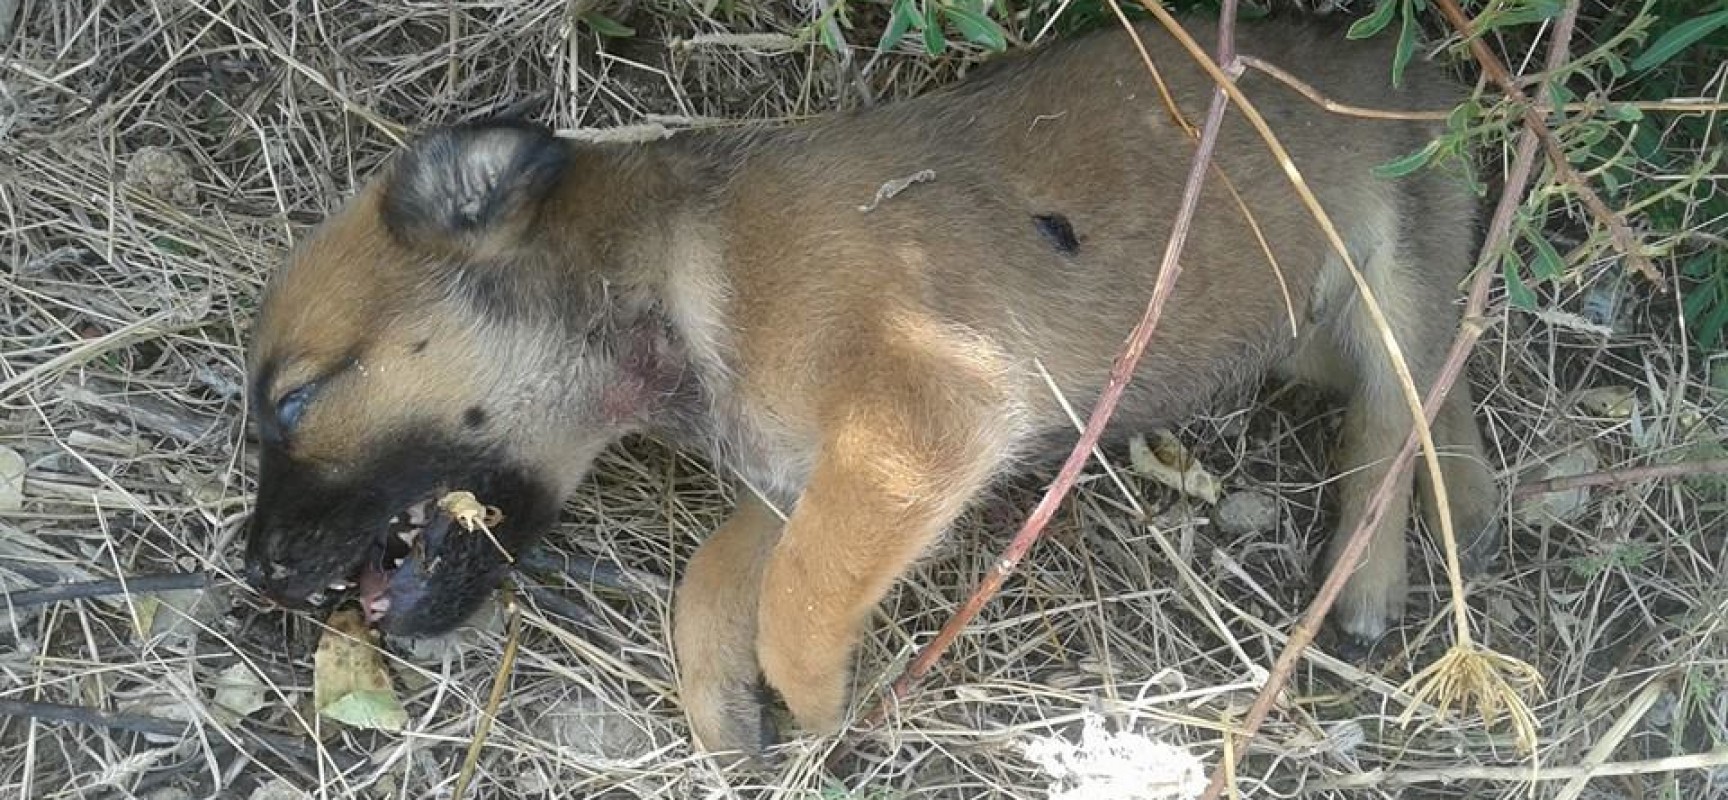 Trovato morto un intero branco di cani randagi, l’associazione Laika di Trani sporge denuncia per uccisione e maltrattamento